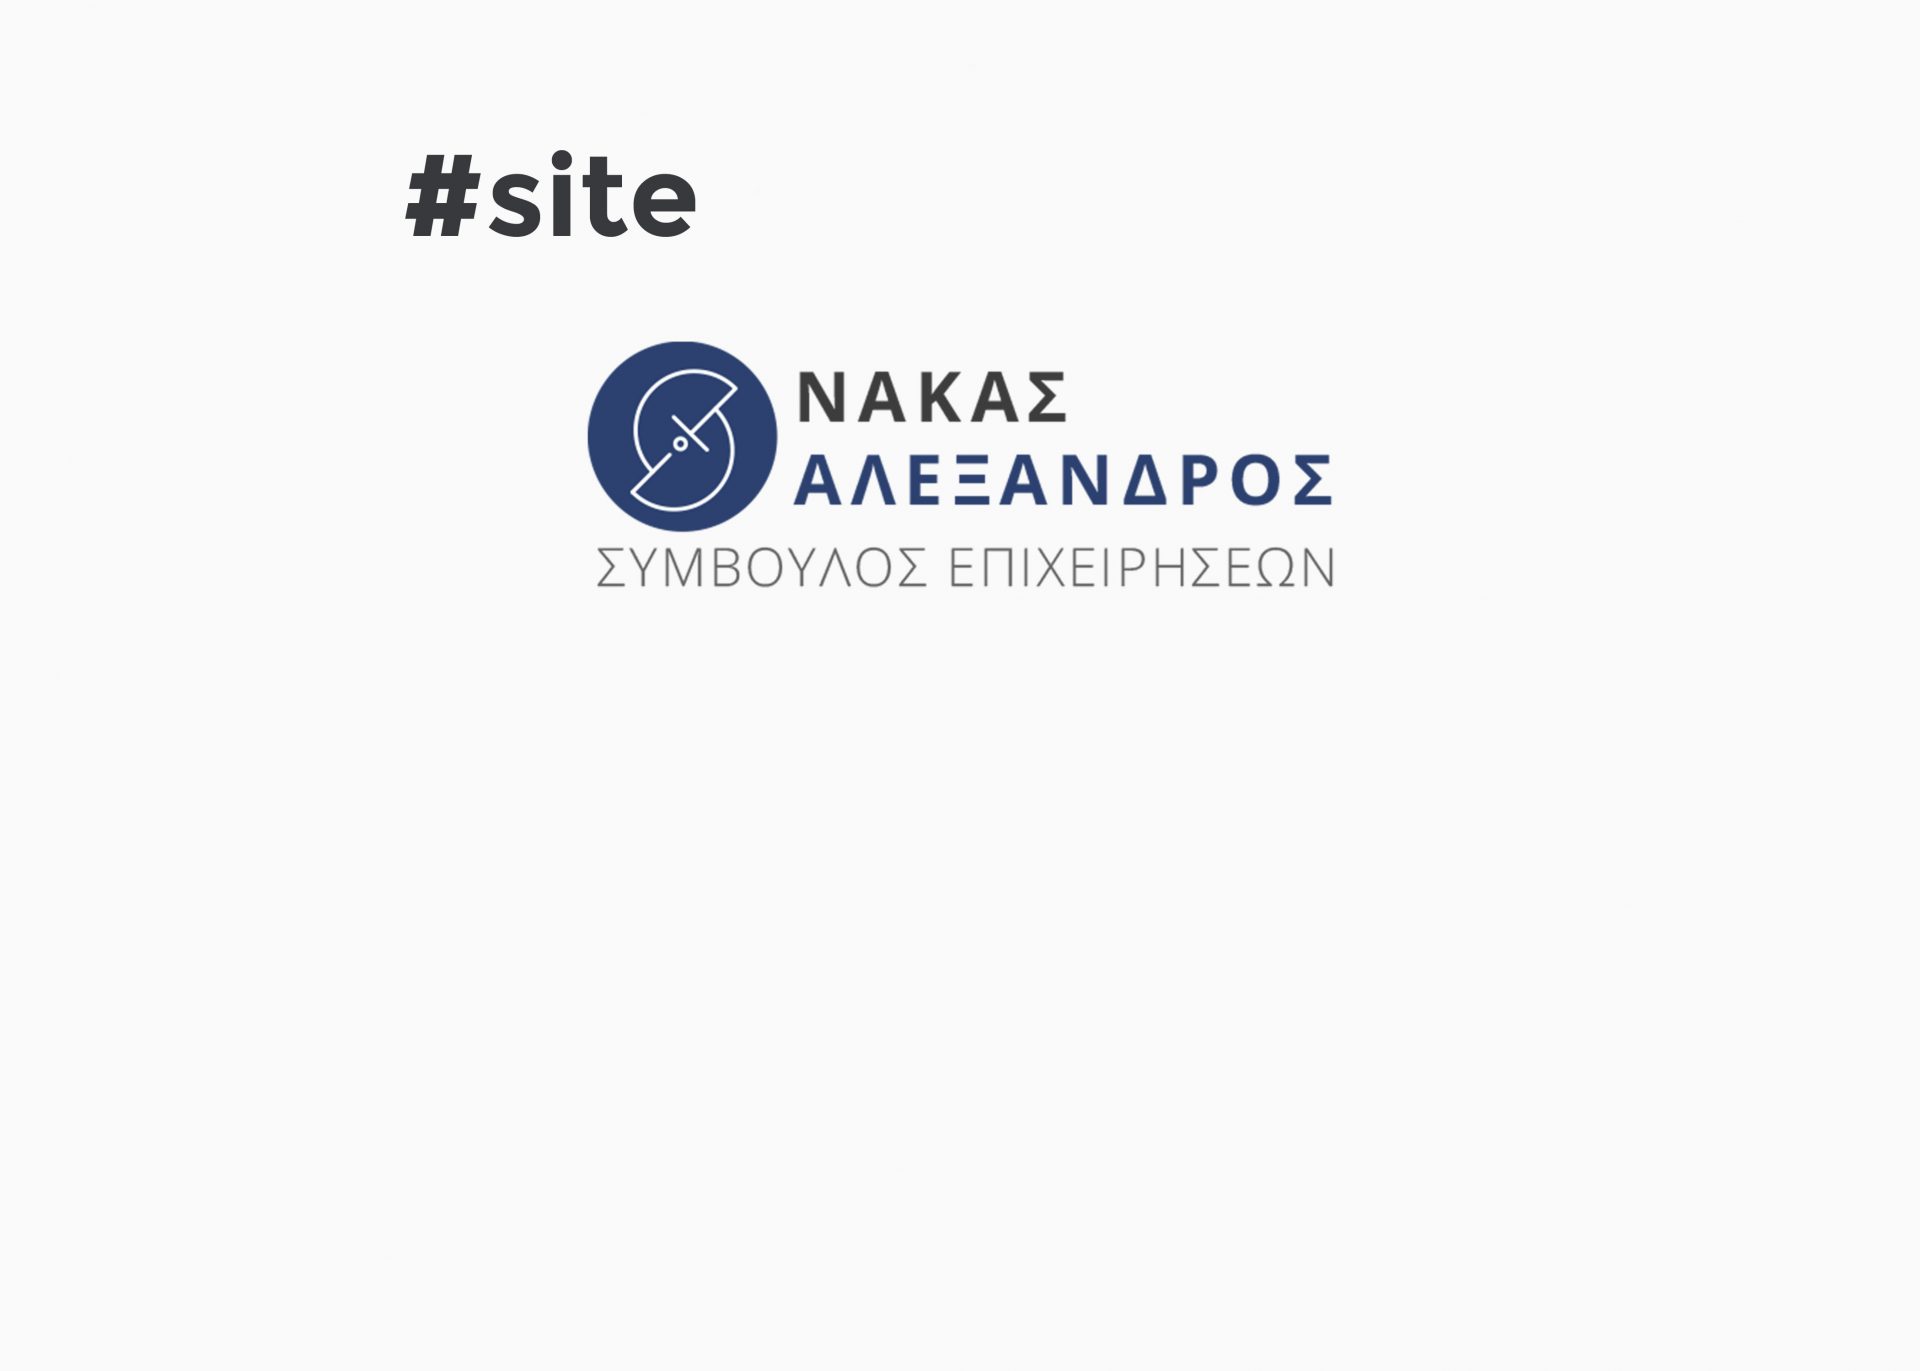 Site – nakasconsulting.gr